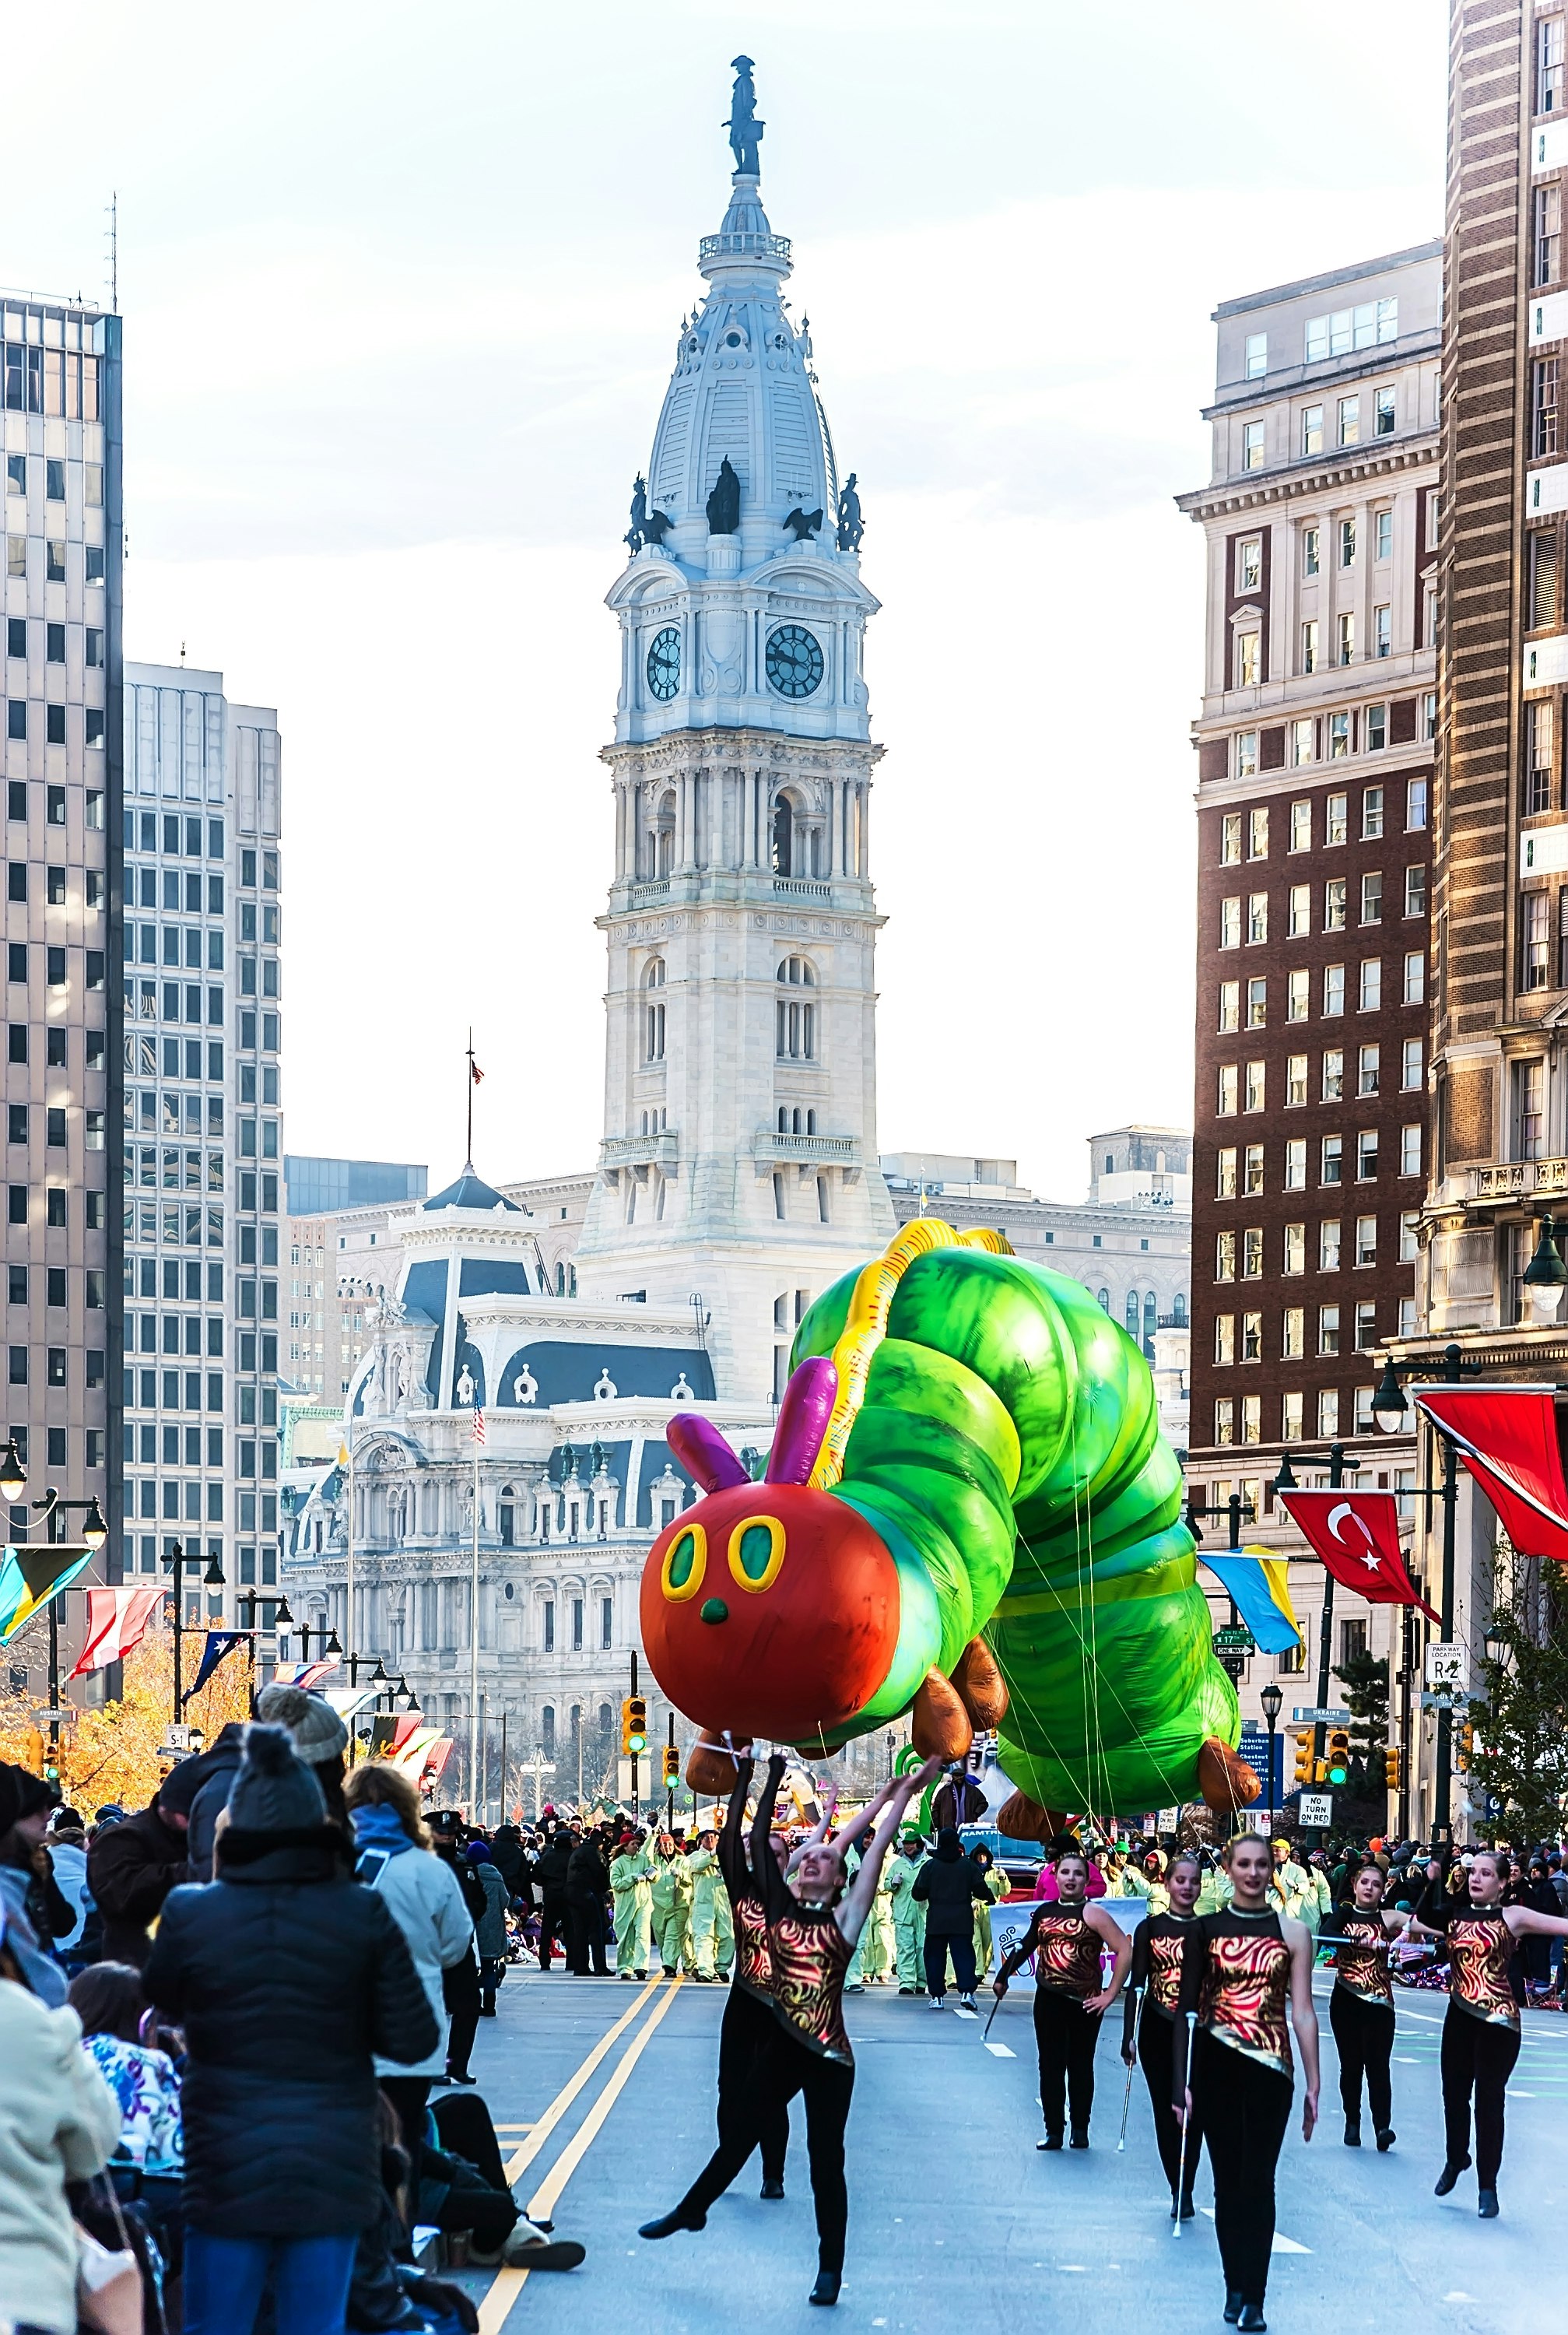 A Very Hungry Caterpillar balloon floats through Philadelphia, Pennsylvania